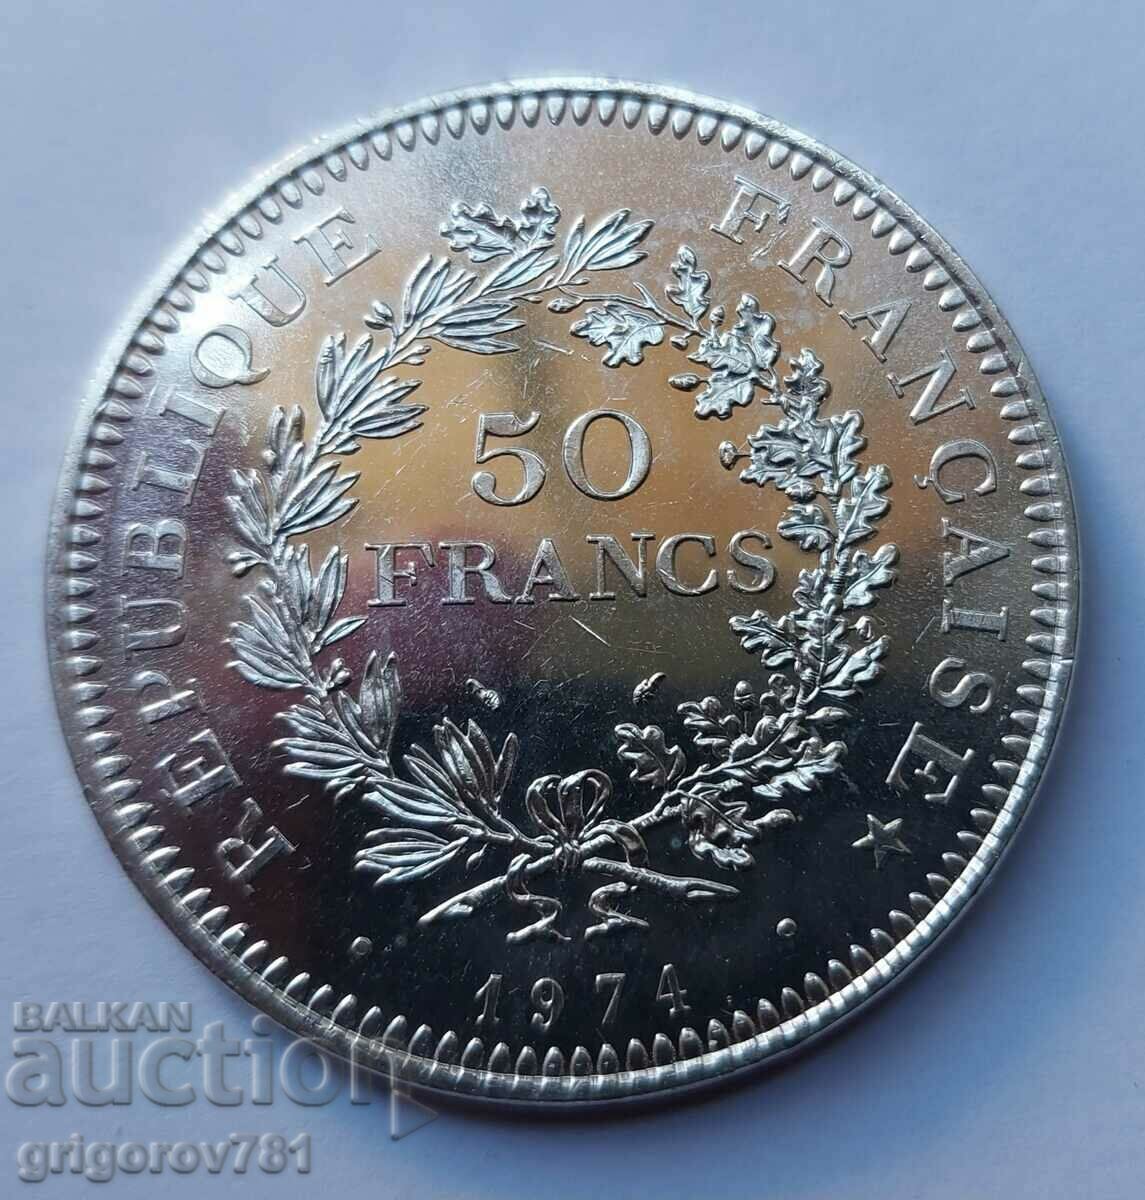 50 Franci Argint Franta 1974 - Moneda de argint #28